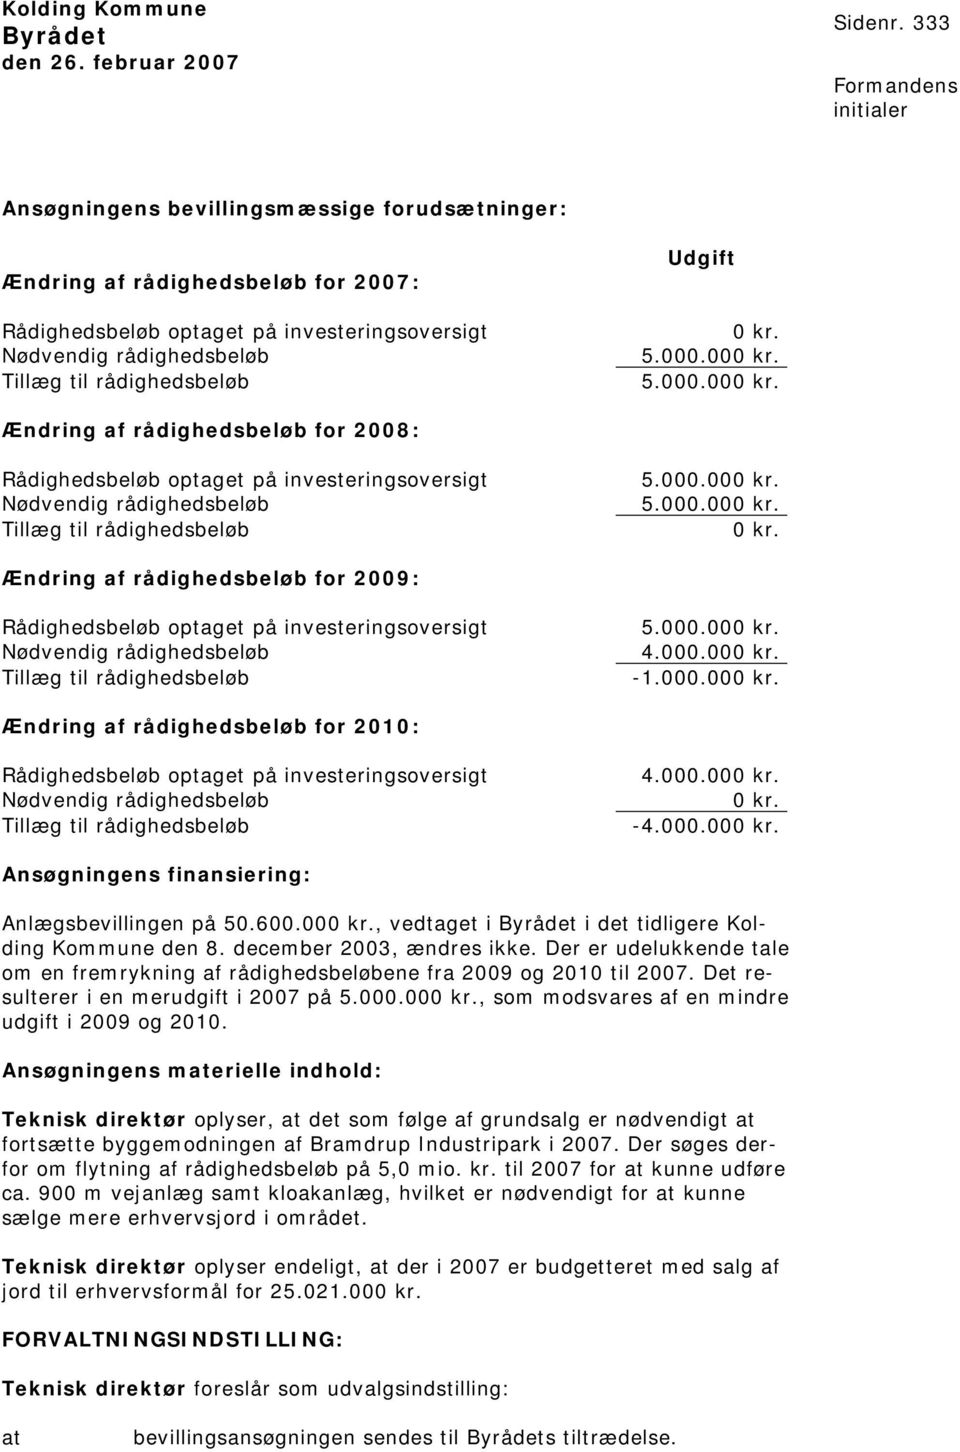 000.000 kr. 5.000.000 kr. Ændring af rådighedsbeløb for 2008: Rådighedsbeløb optaget på investeringsoversigt Nødvendig rådighedsbeløb Tillæg til rådighedsbeløb 5.000.000 kr. 5.000.000 kr. 0 kr.